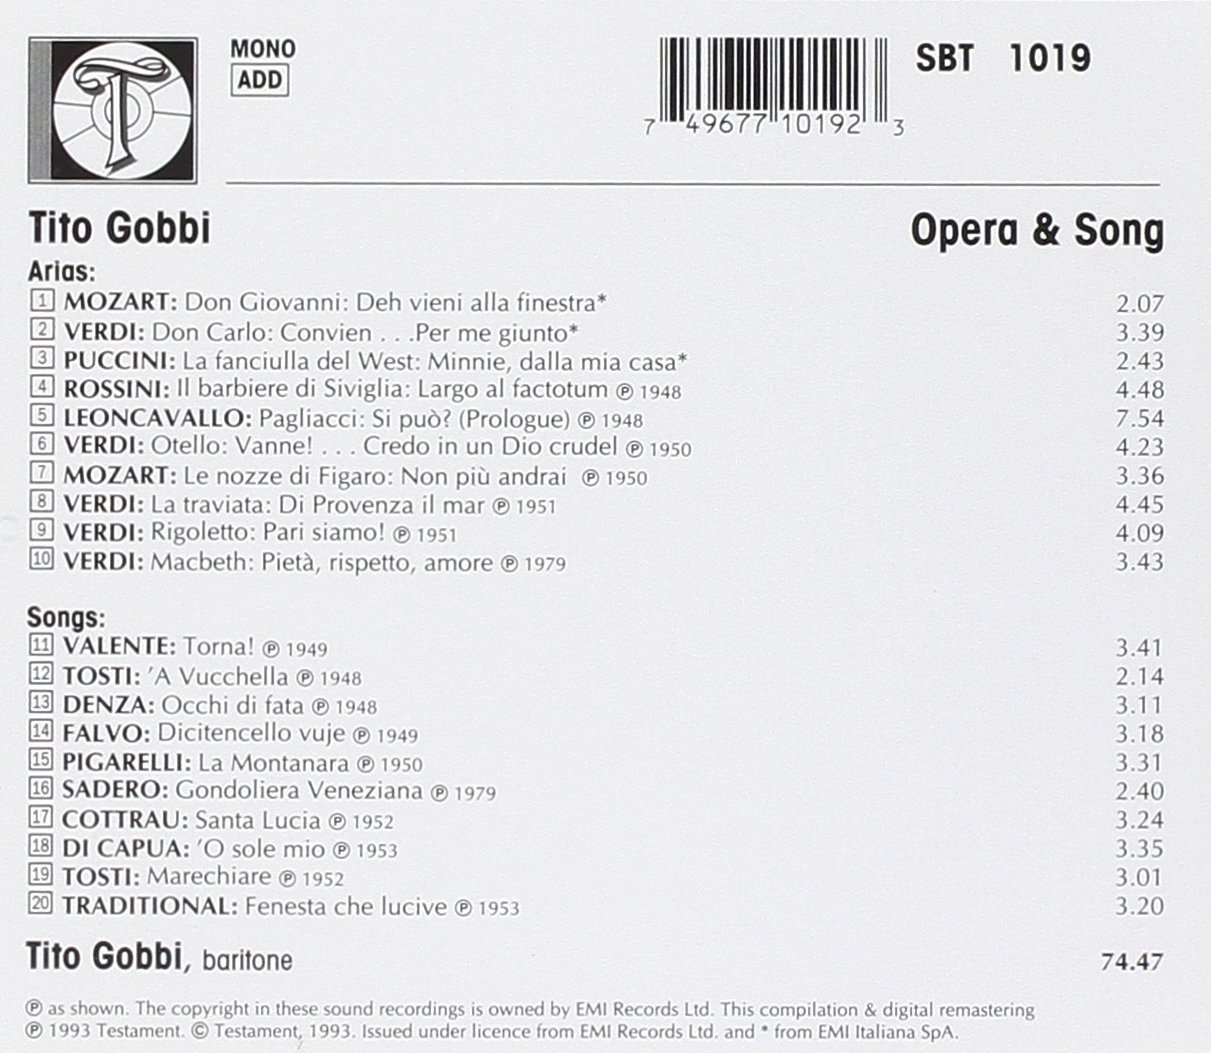 티토 고비가 부르는 오페라와 가곡집 (Tito Gobbi : Opera and Songs) 